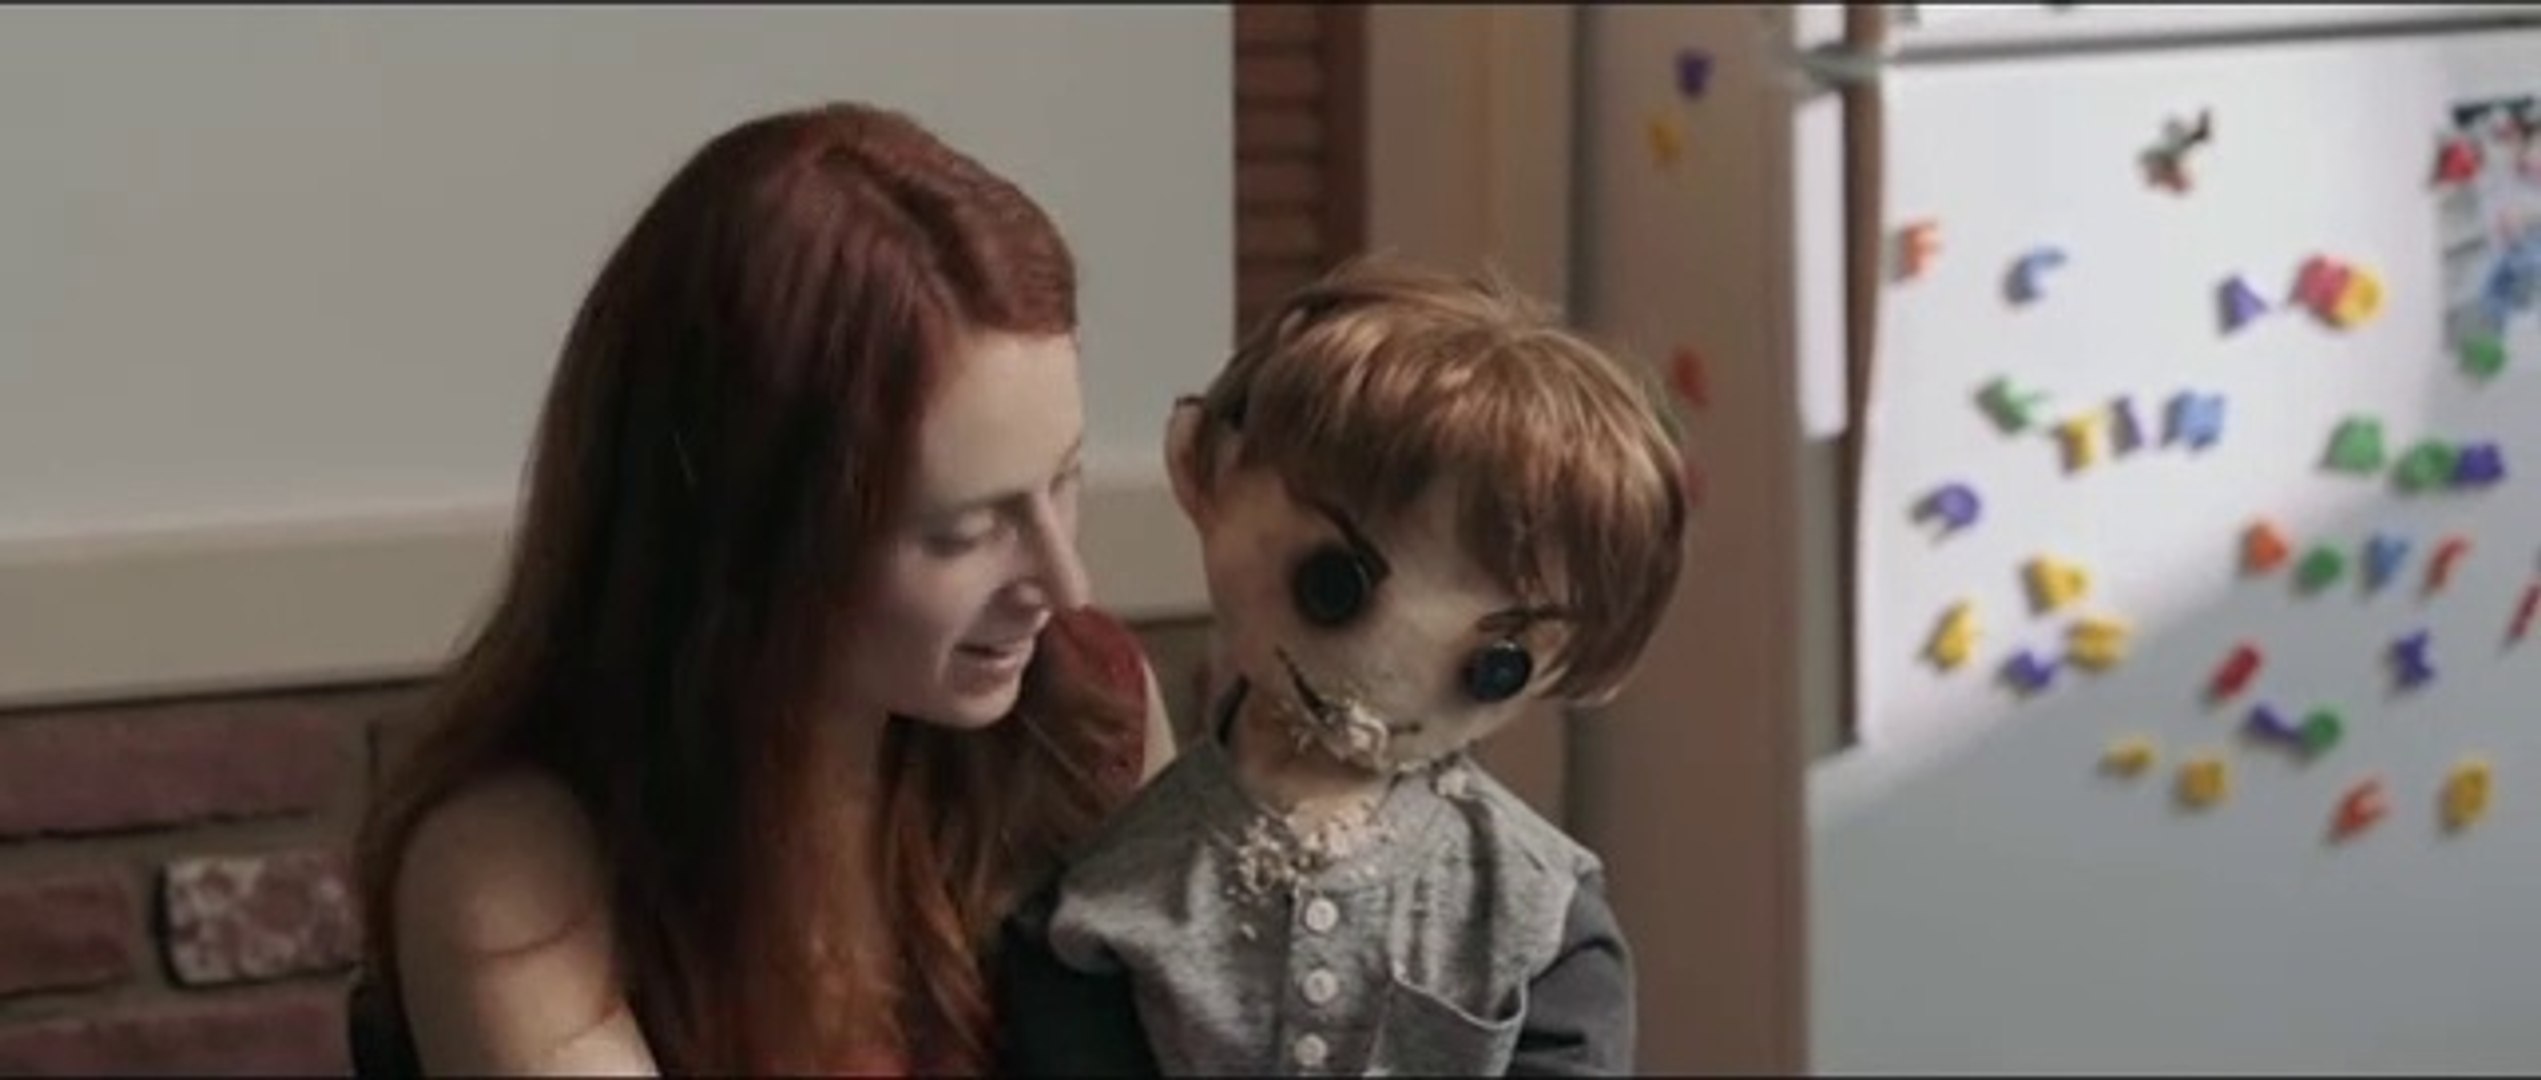 El creador de muñecos (cortometraje de terror) - Vídeo Dailymotion